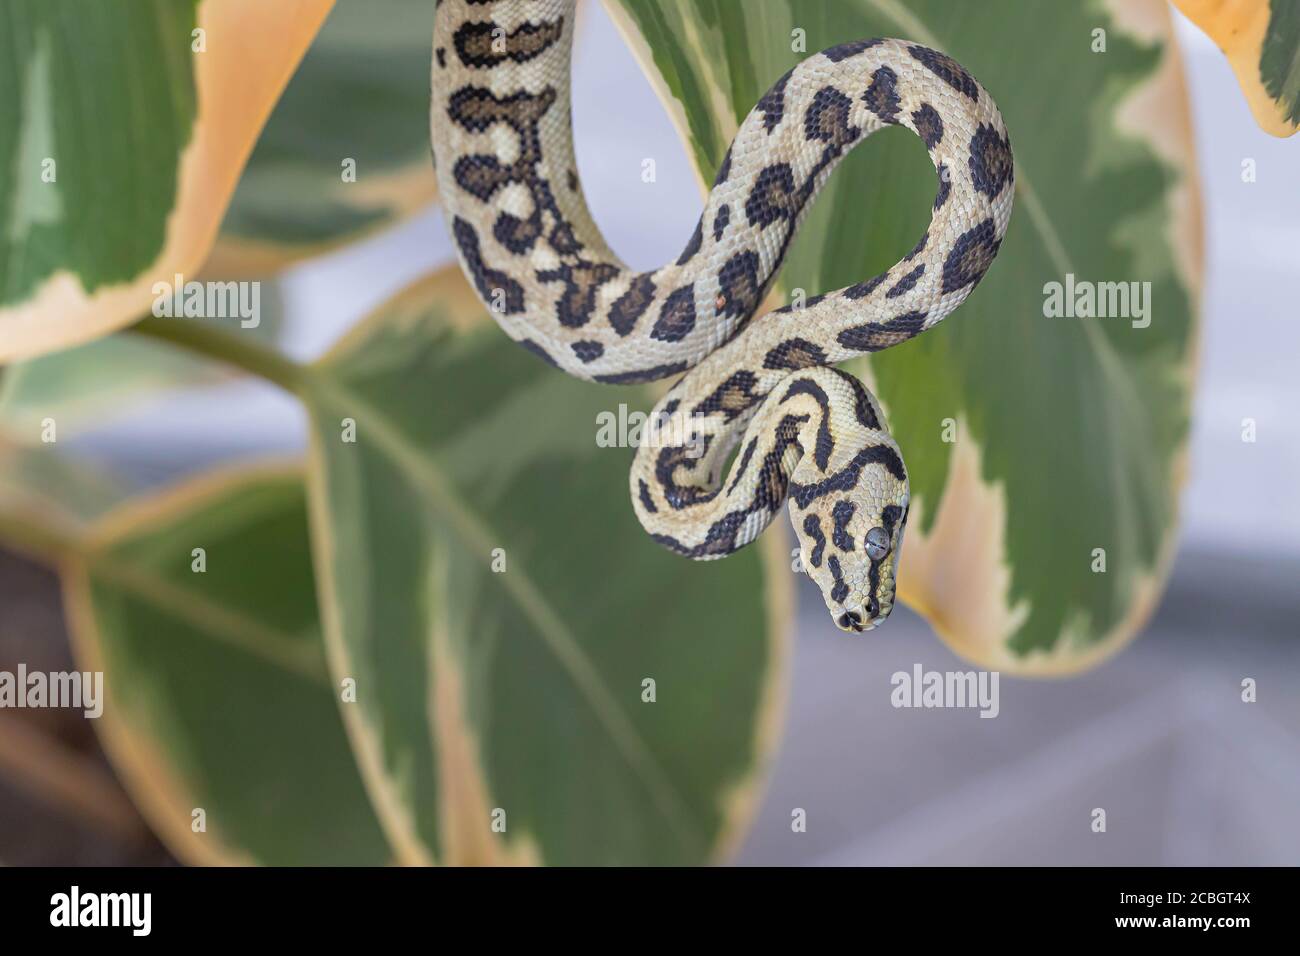 Morelia se pend sur les feuilles de figue en caoutchouc et se courbait vers le haut. Serpent, animal exotique. Gros plan, macro. Papier peint, affiche, fond d'écran Banque D'Images